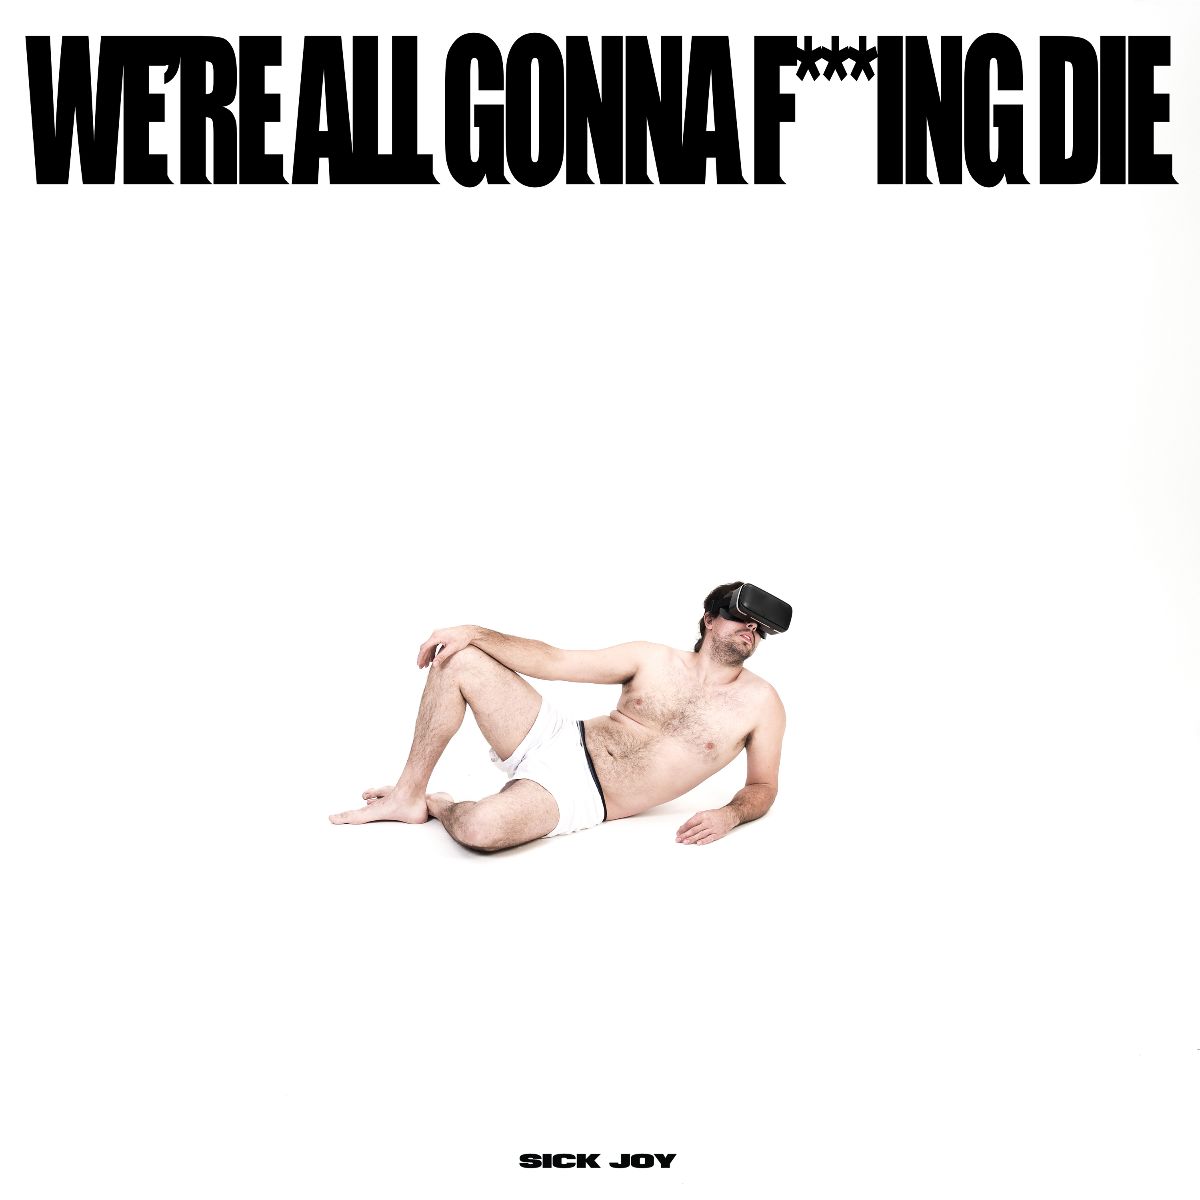 ALBUM ANNOUNCEMENT // Sick Joy – We’re All Gonna F***ing Die